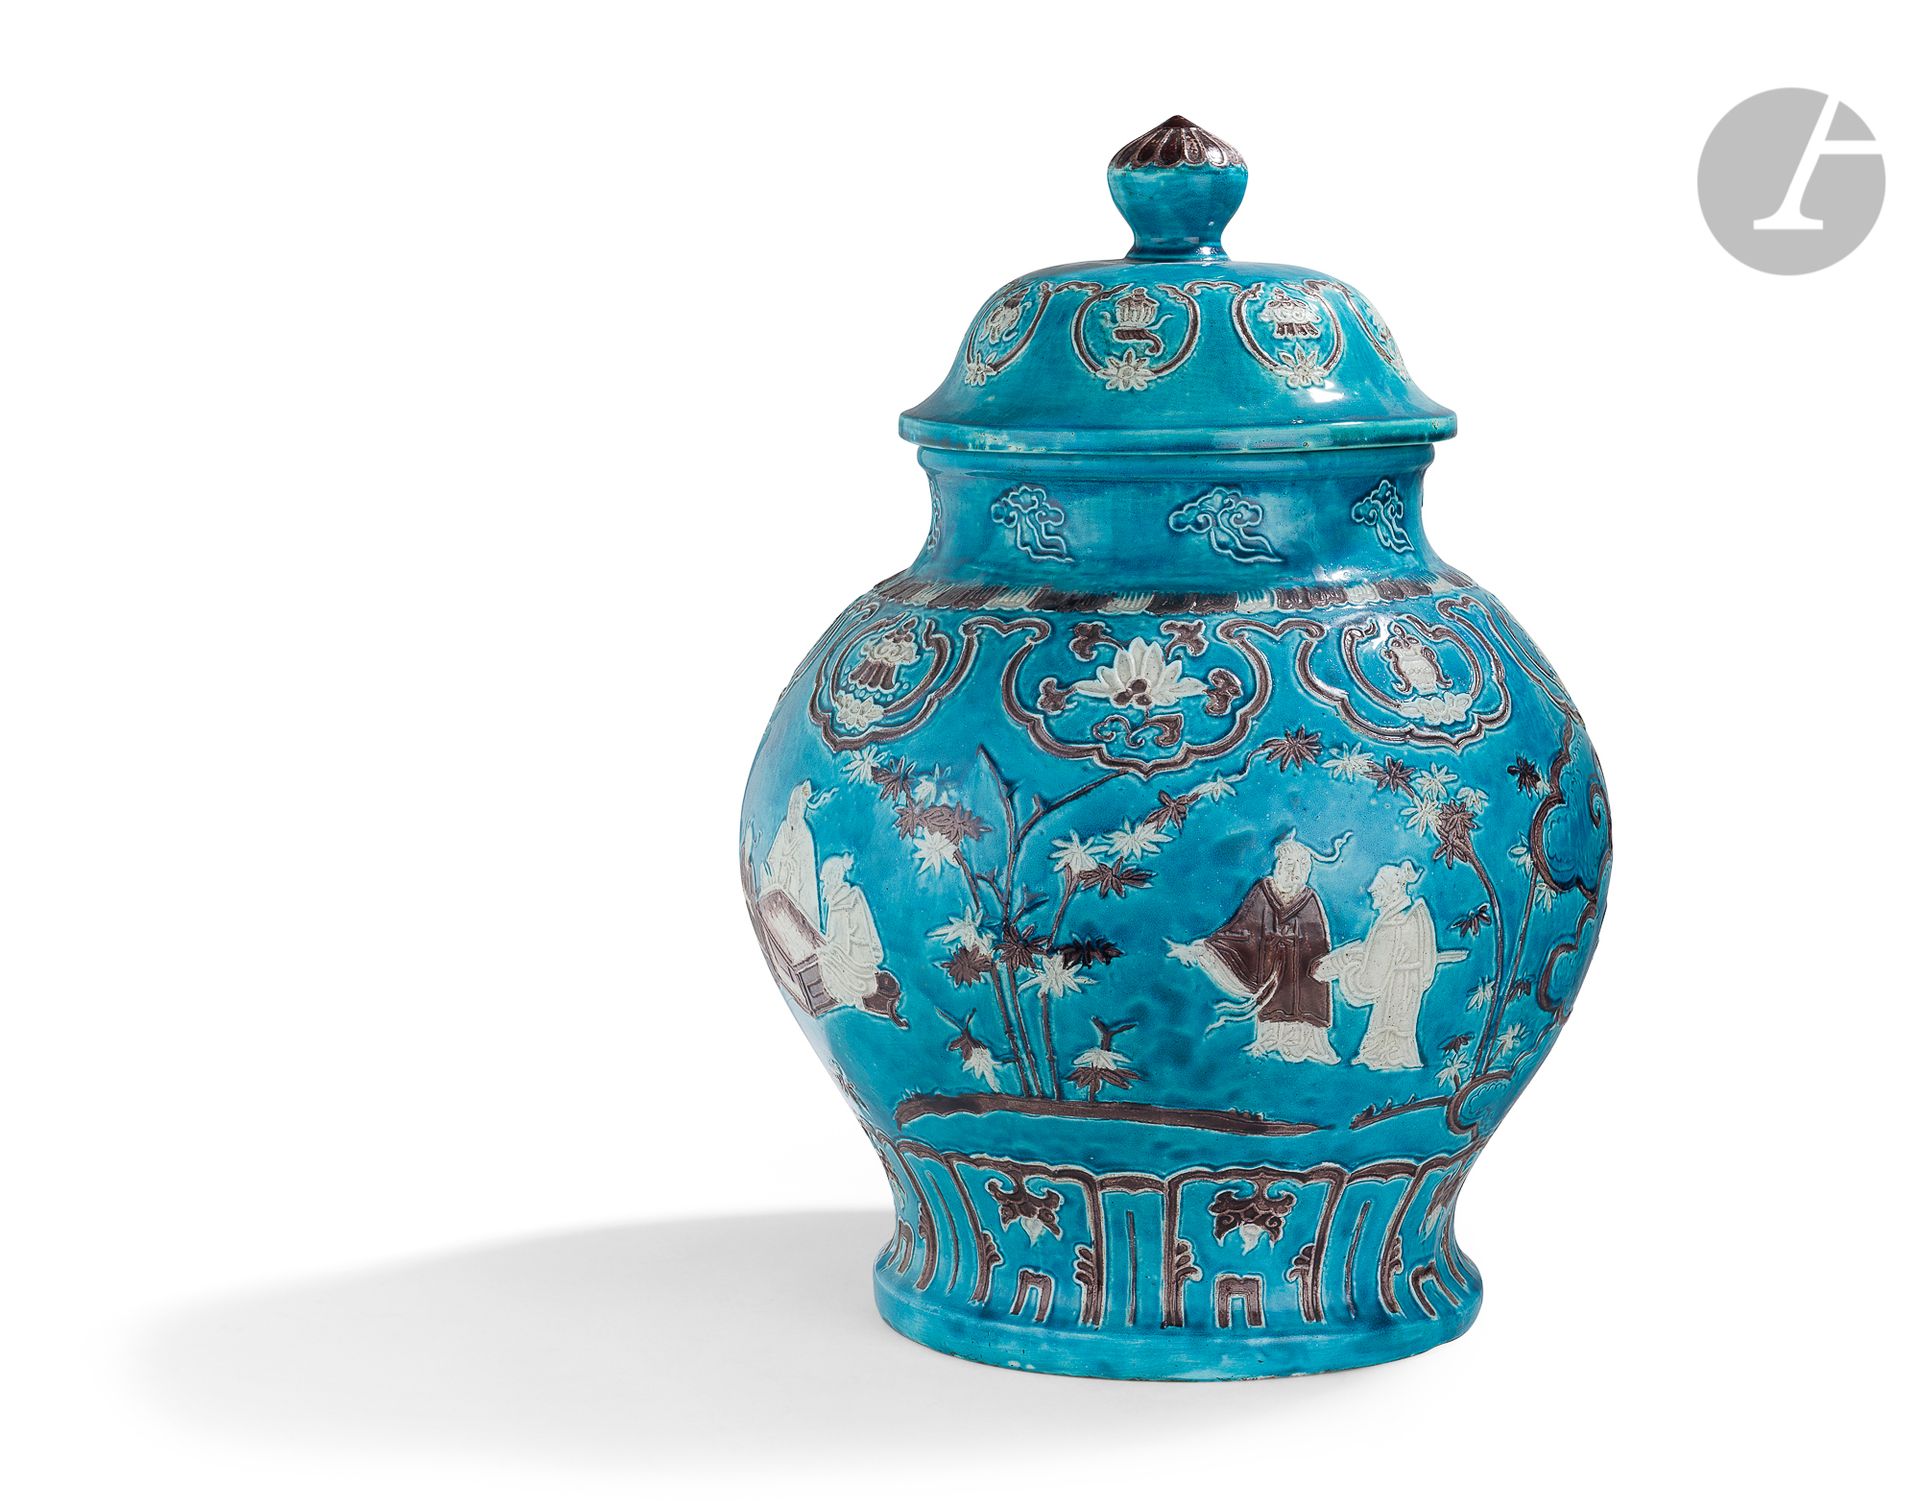 Null 一对法华风格的瓷瓶，中国，19
世纪绿松石蓝色，奶油色和锰色的珐琅，模仿明朝时期的法华技术（通过浮雕中的泥土网绘制景泰蓝）
。
颈部装饰有造型云纹，其&hellip;